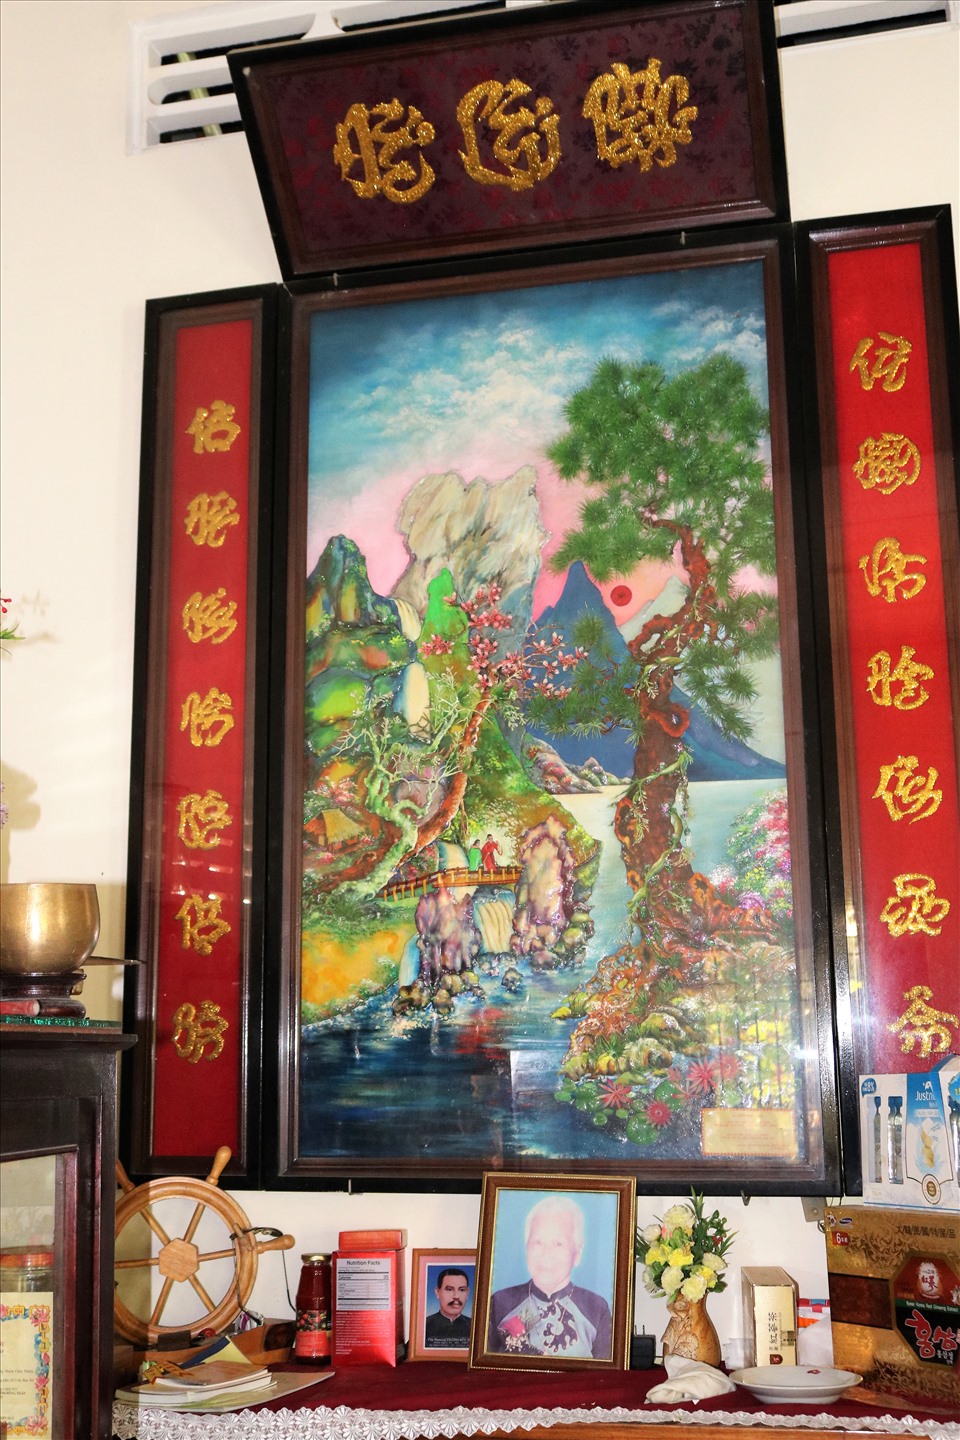 Liễng thờ được ông Tai tạo hình nghệ thuật từ tranh gói vải.